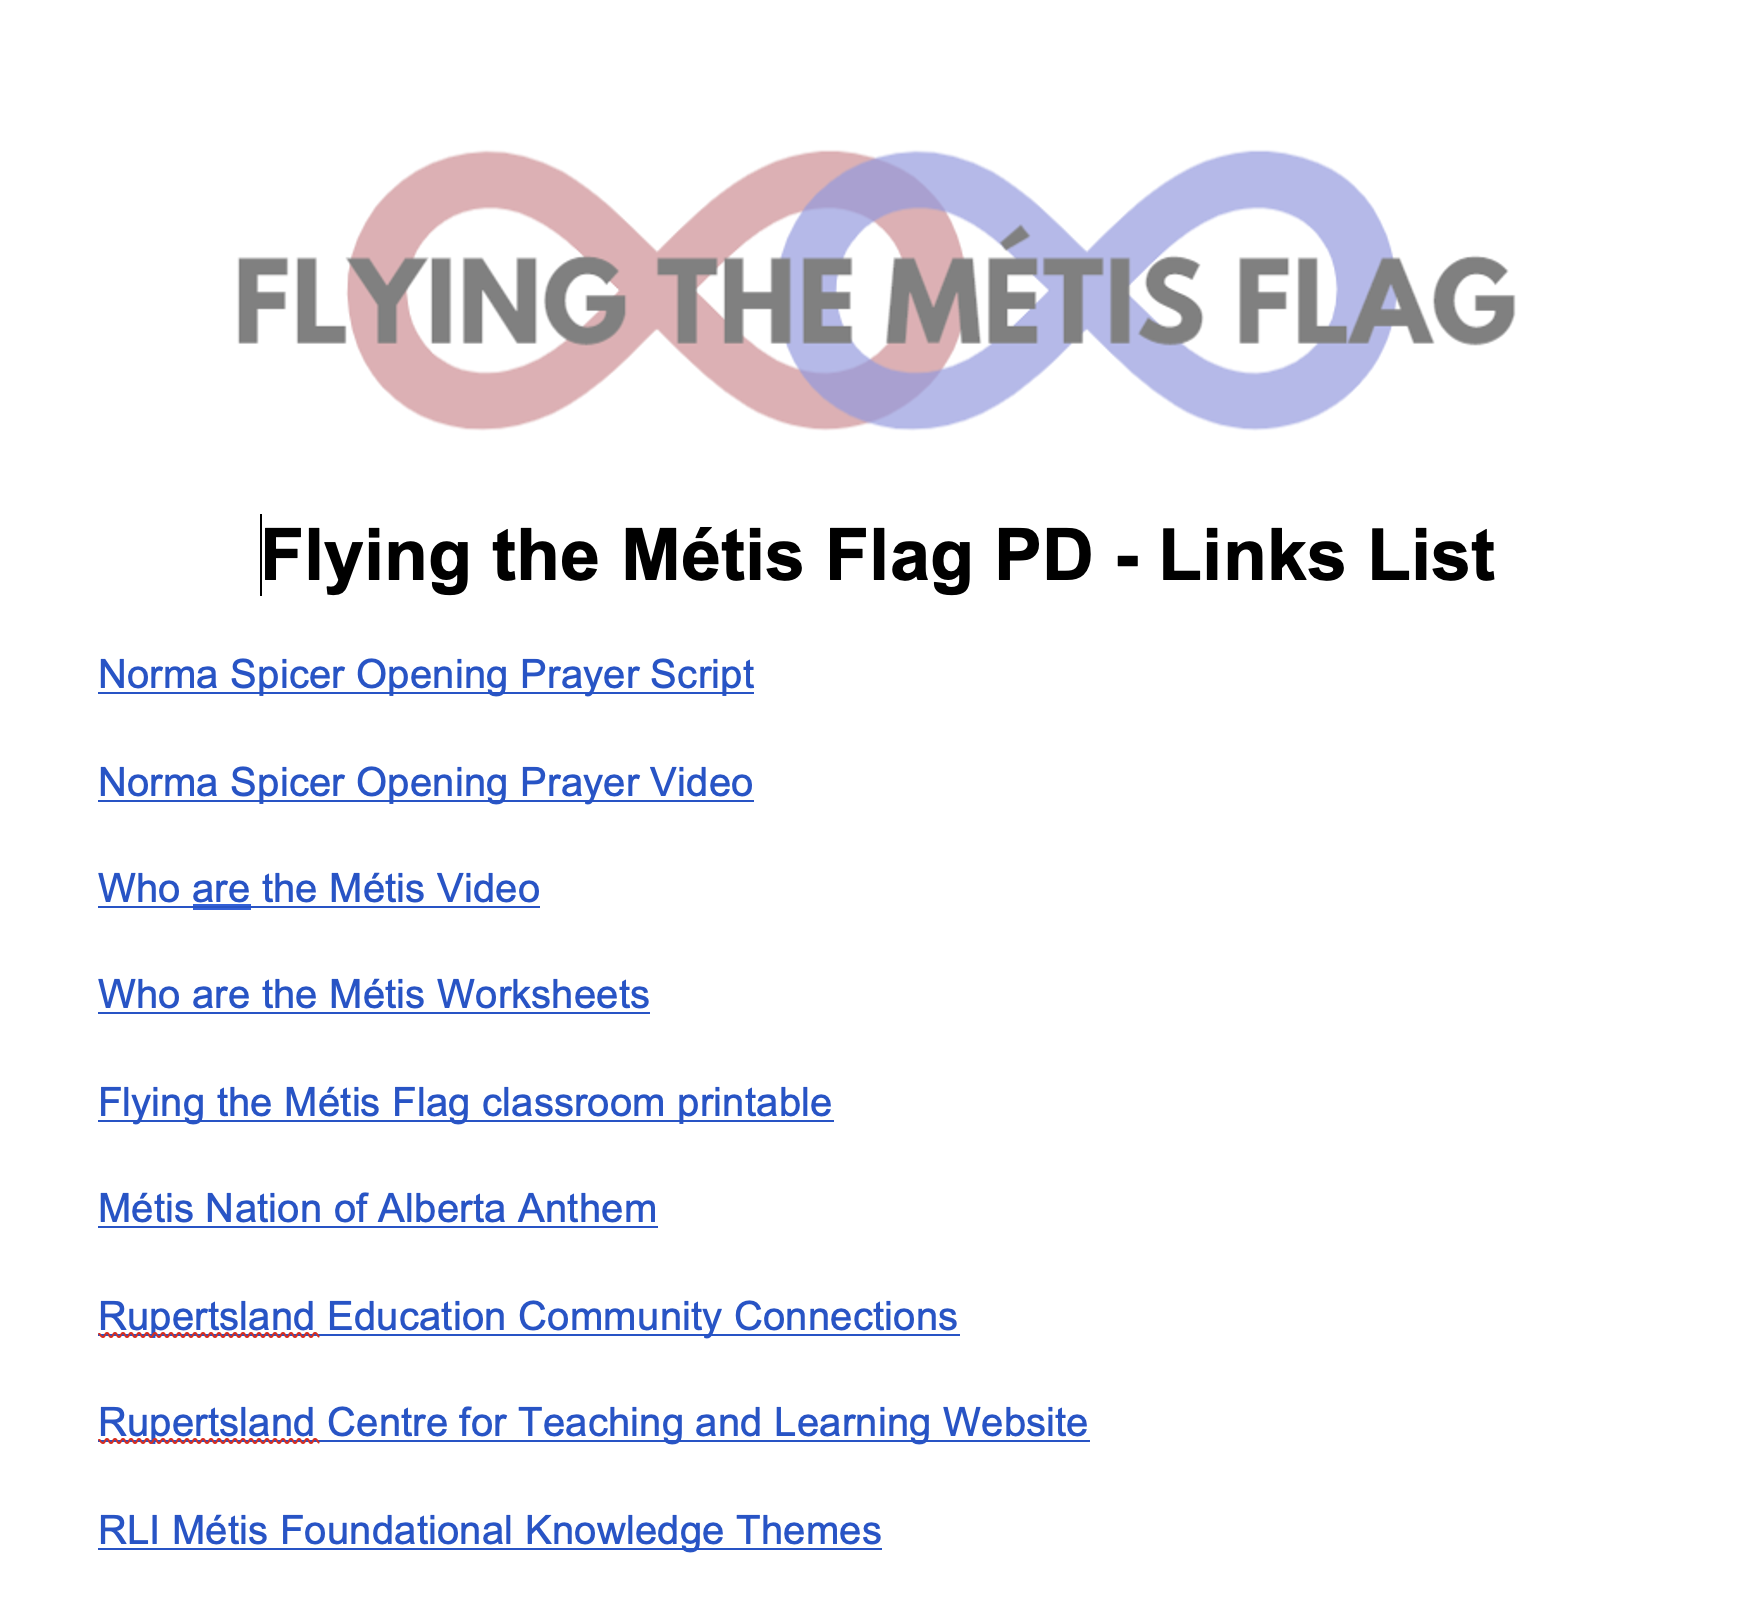 Flying the Métis Flag - Links List